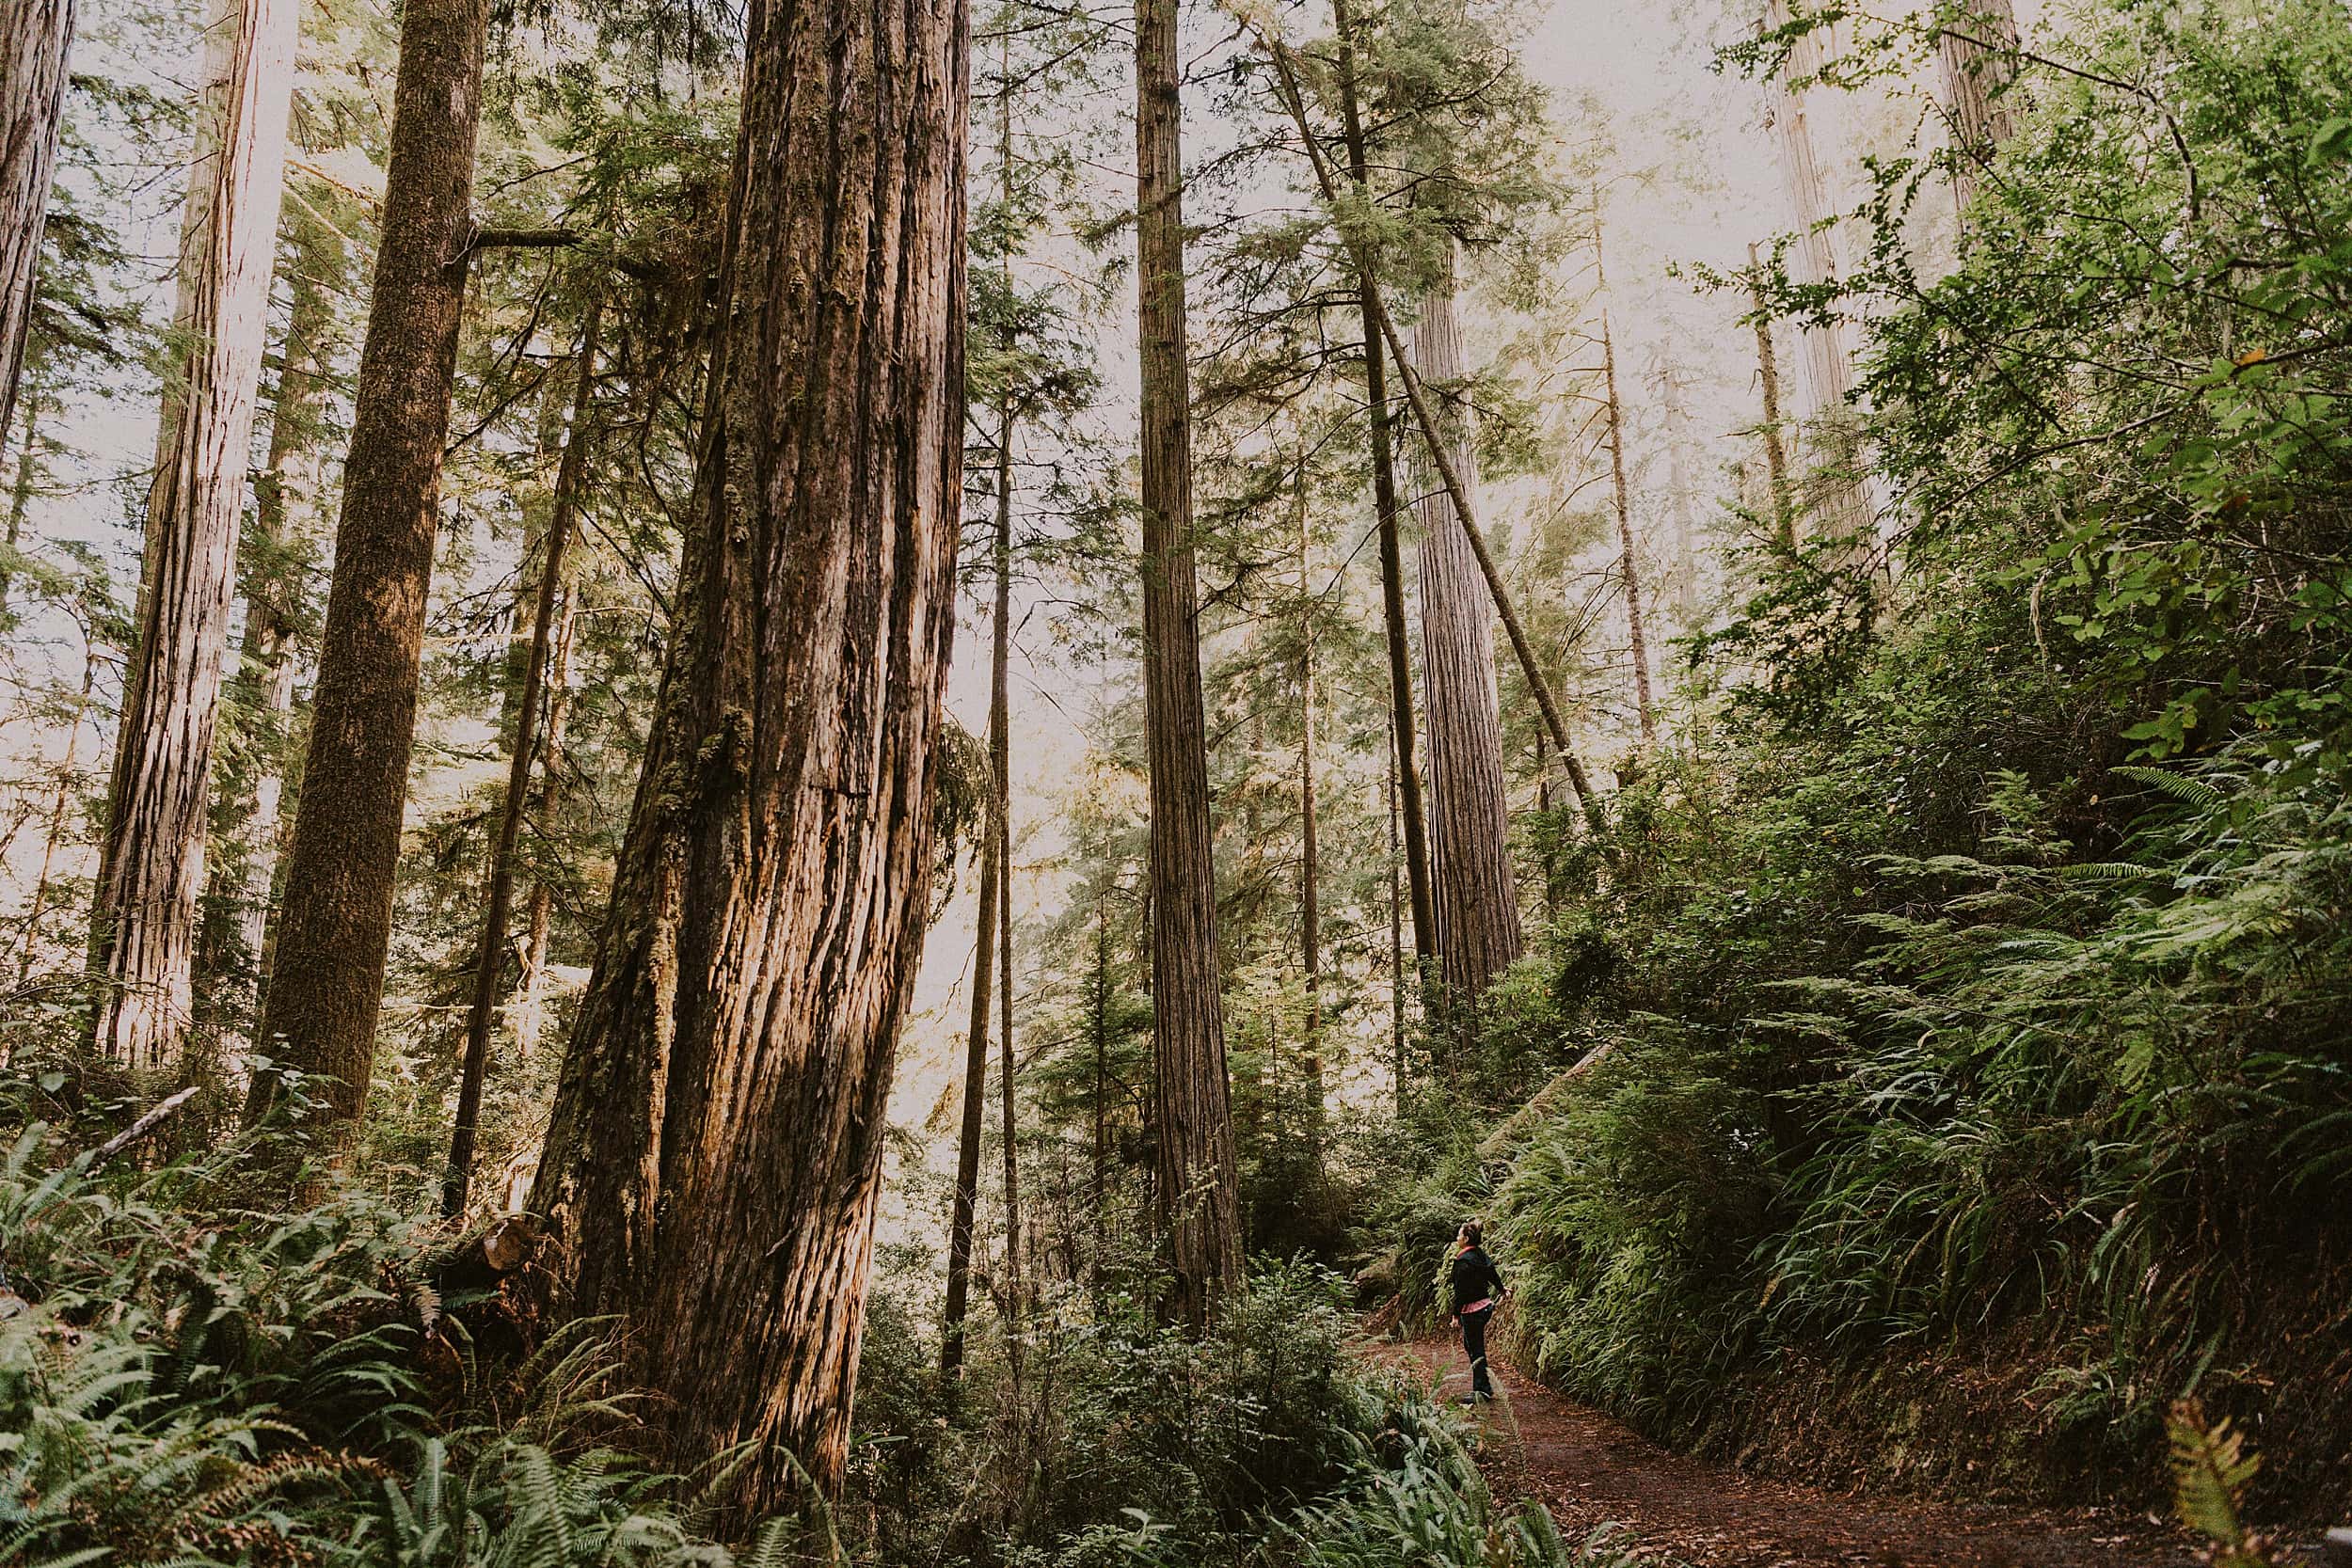 bride and groom walking together redwoods national and state park landscape